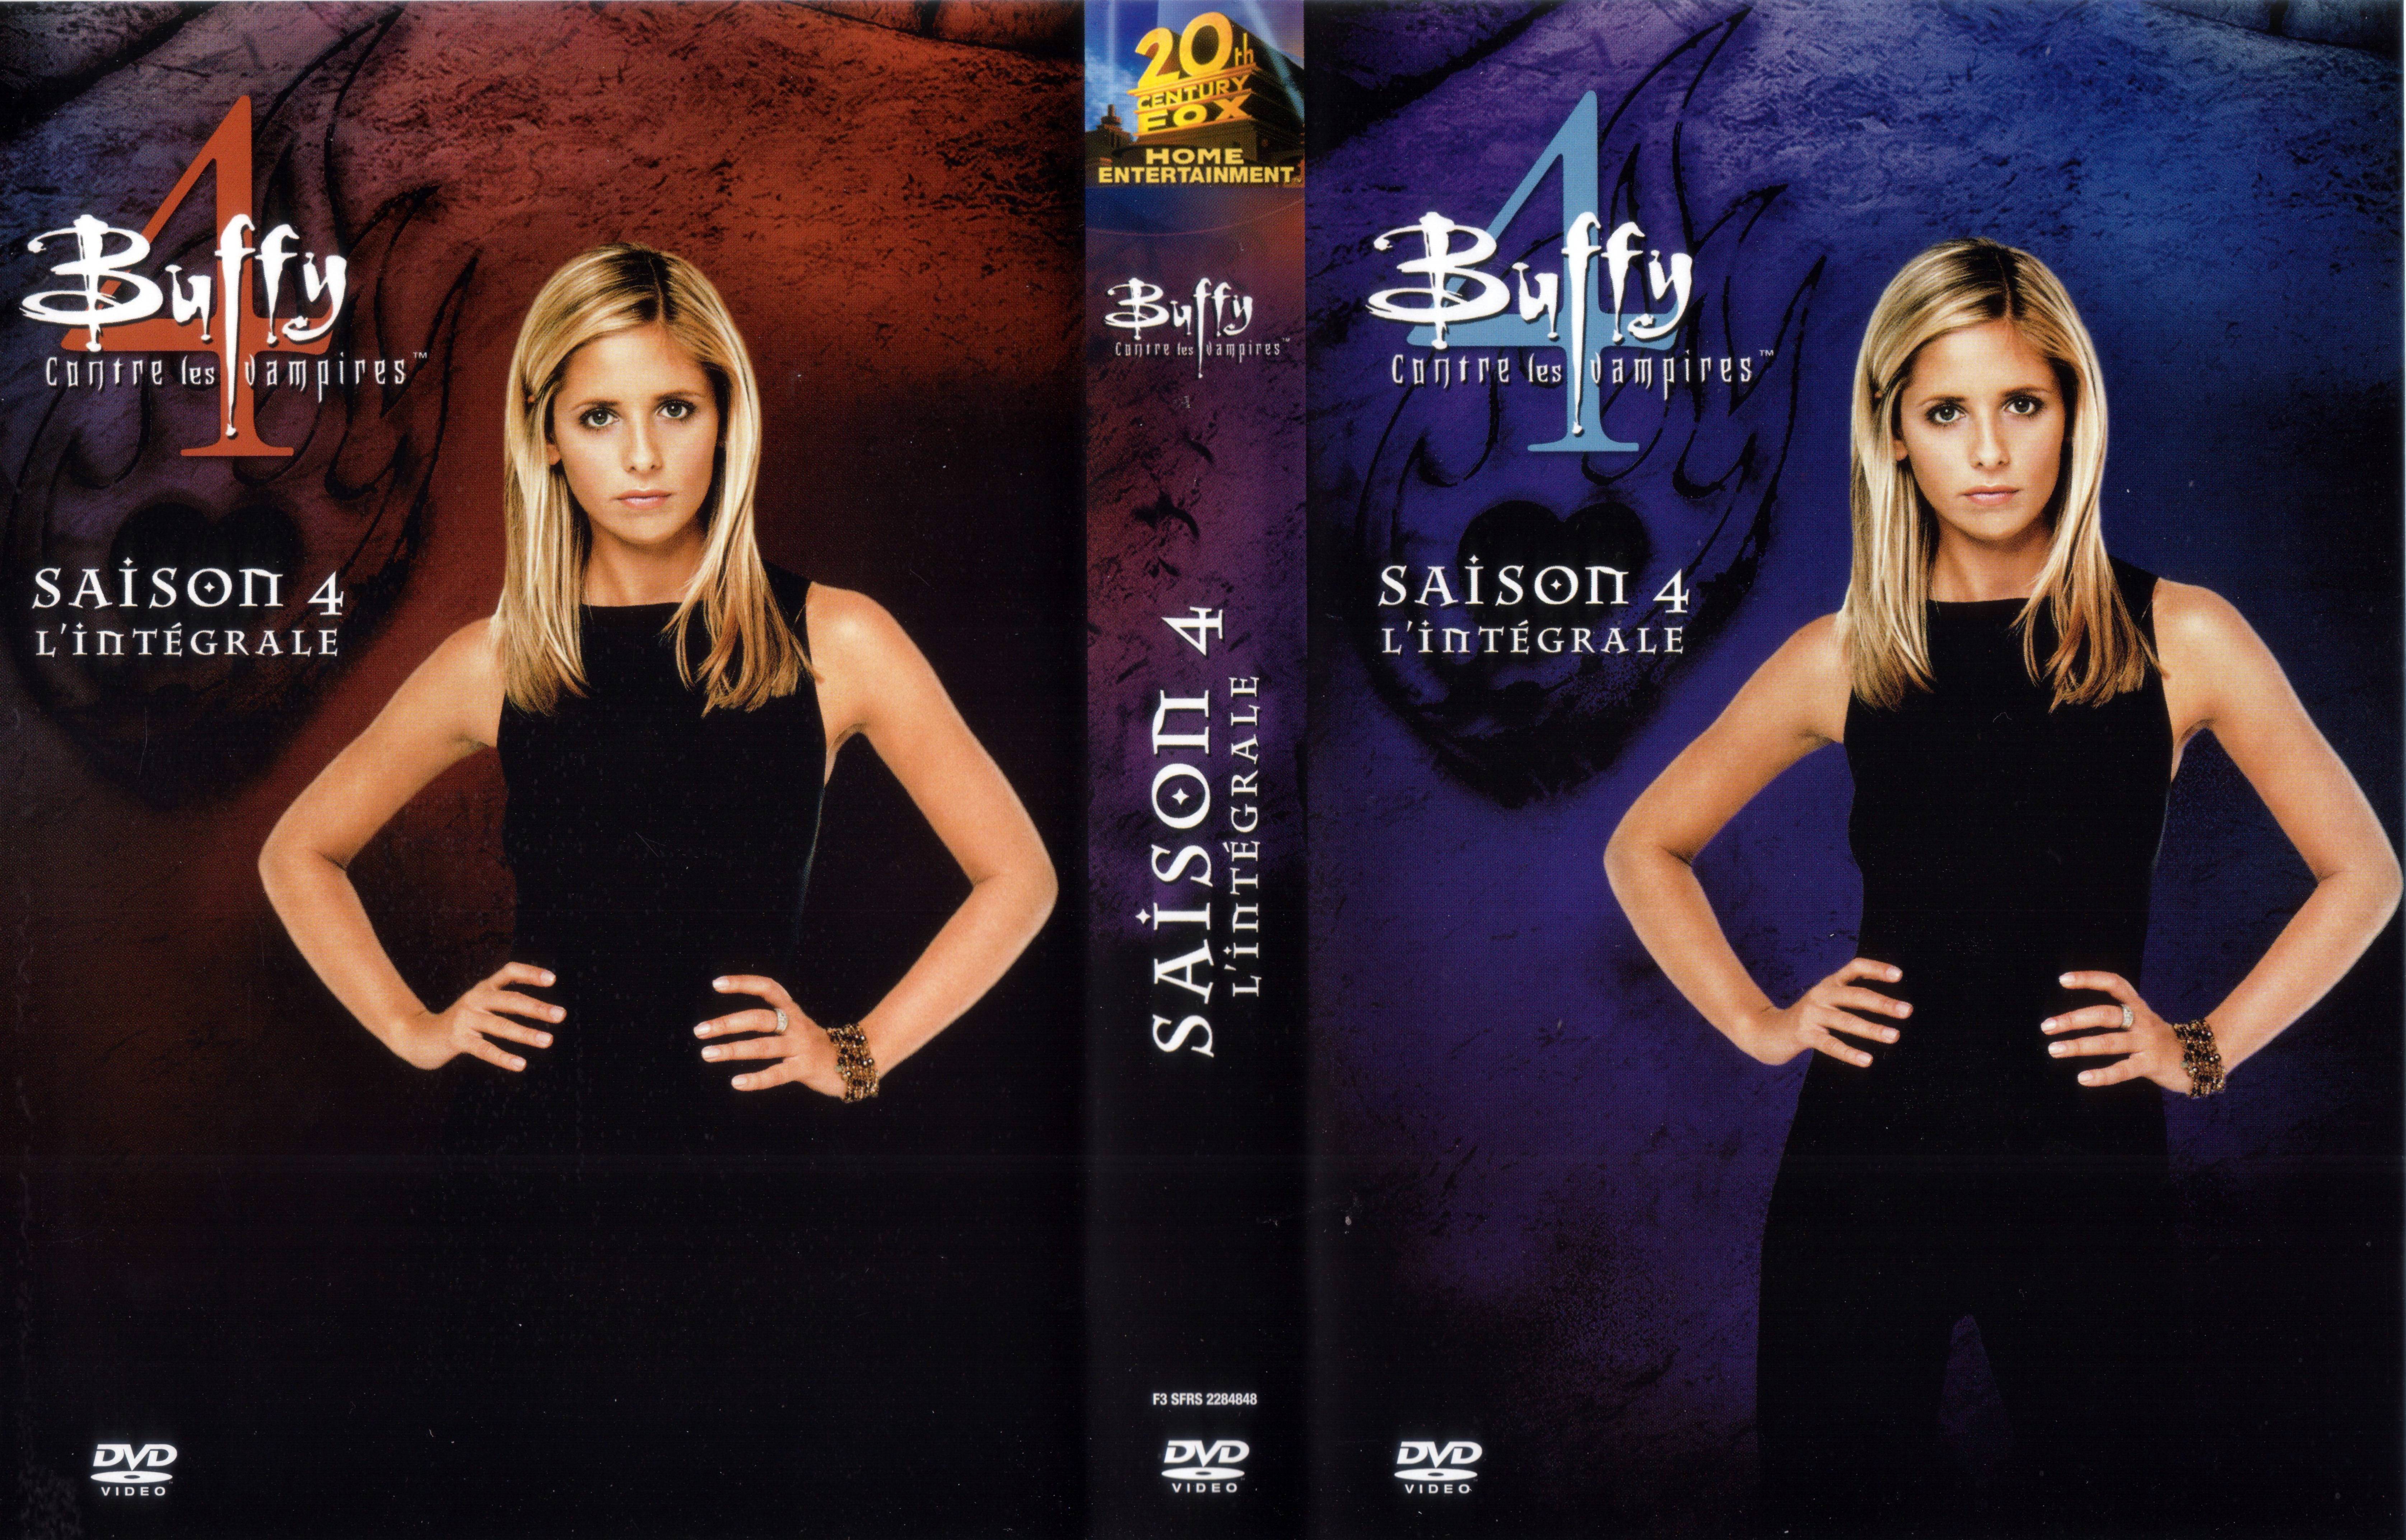 Jaquette DVD Buffy contre les vampires Saison 4 COFFRET